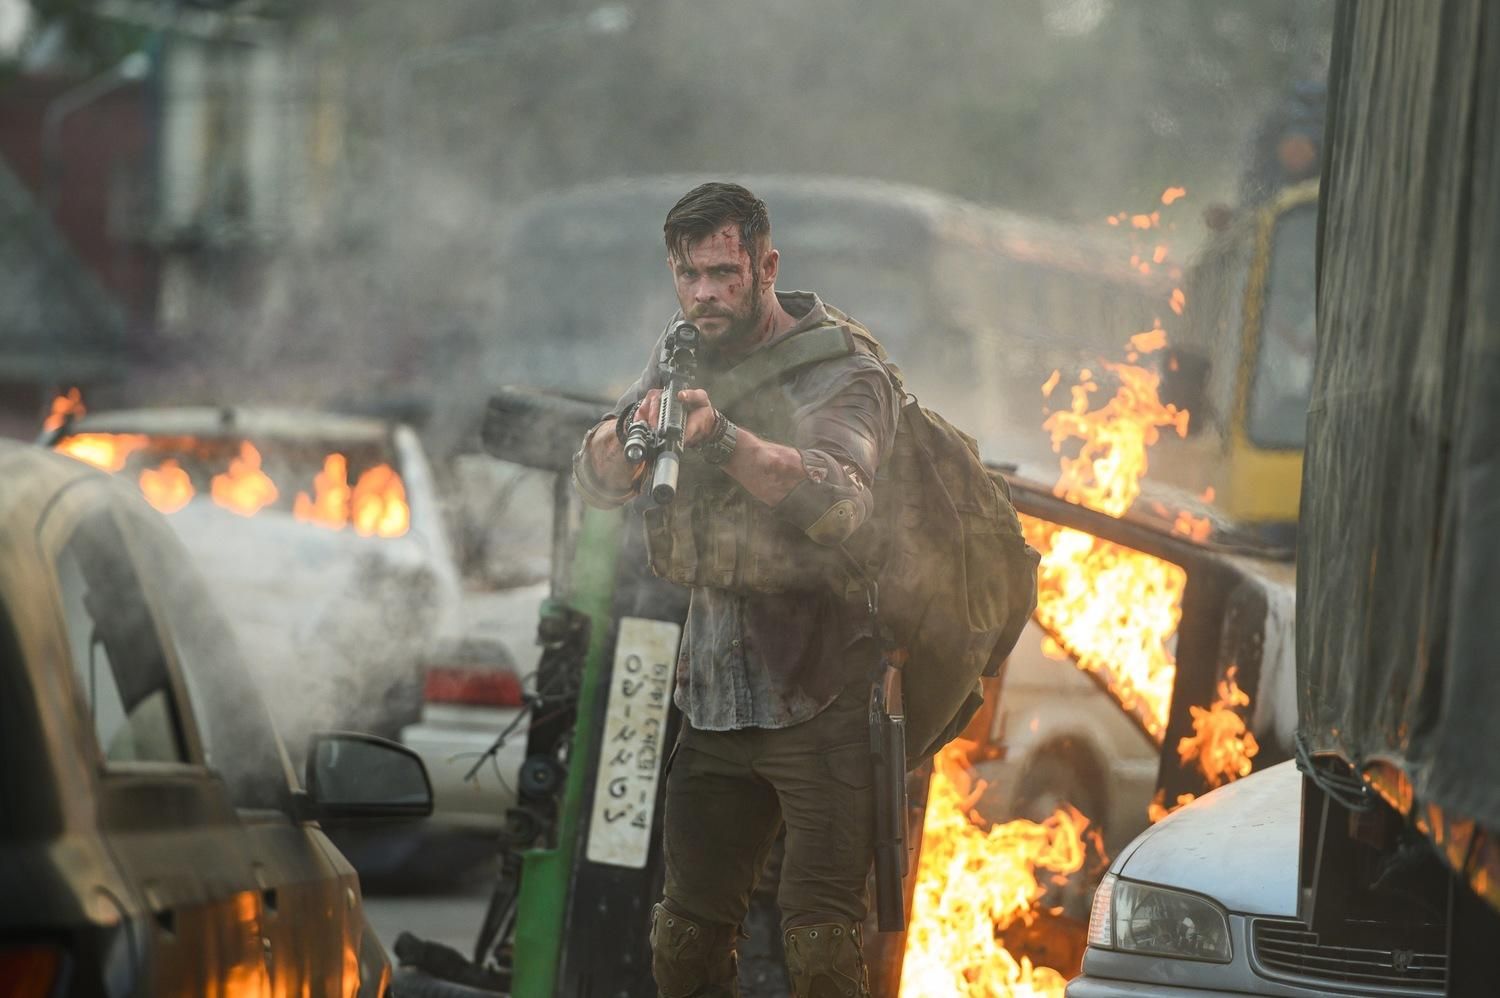 Чому бойовик "Евакуація" з Крісом Гемсвортом став найпопулярнішим фільмом Netflix - Кіно